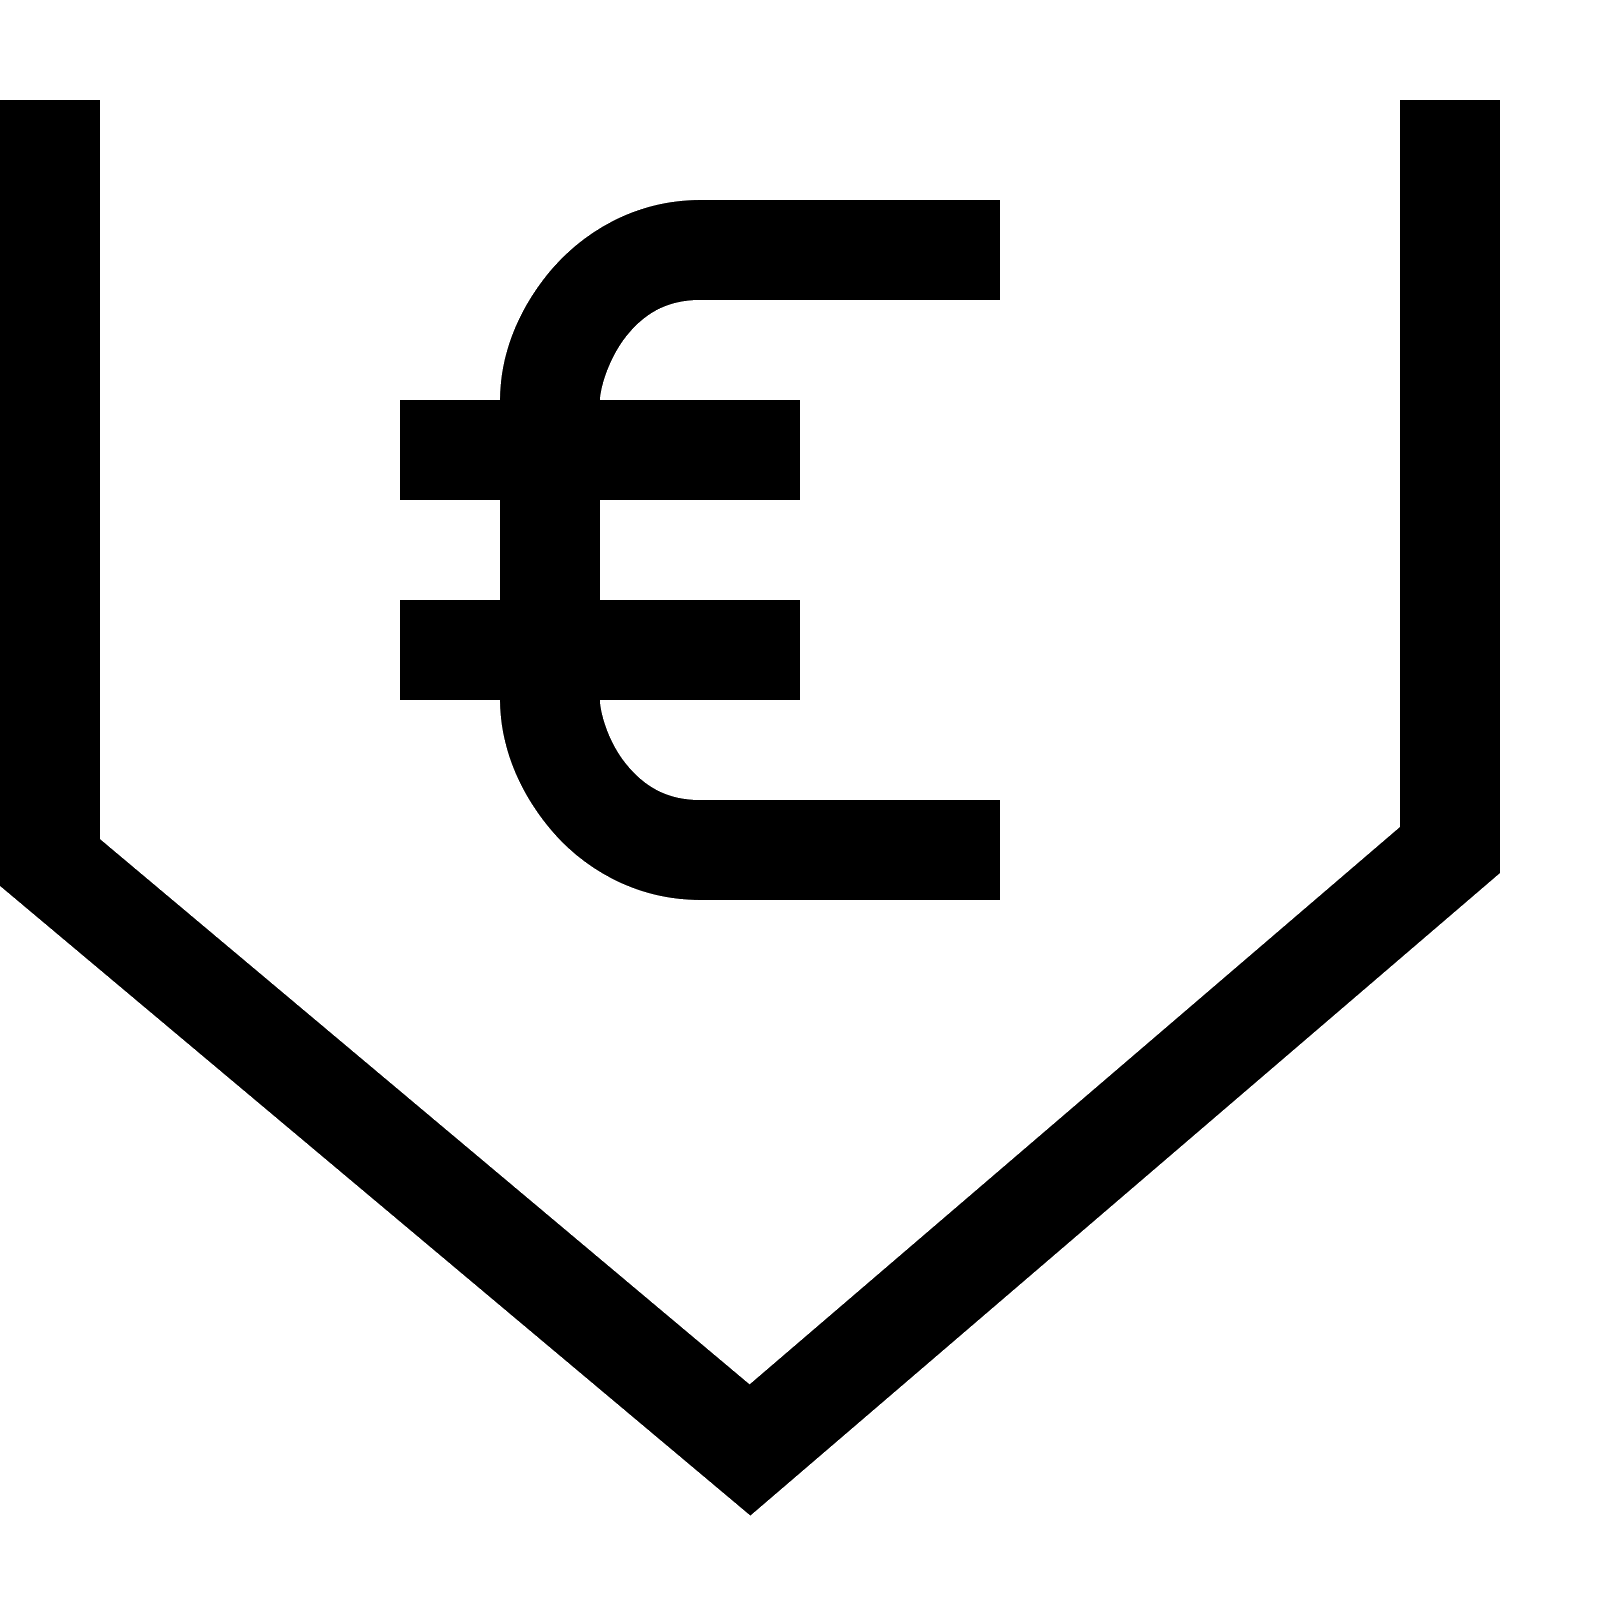 Euro Logo - Euro Symbol PNG Transparent Image